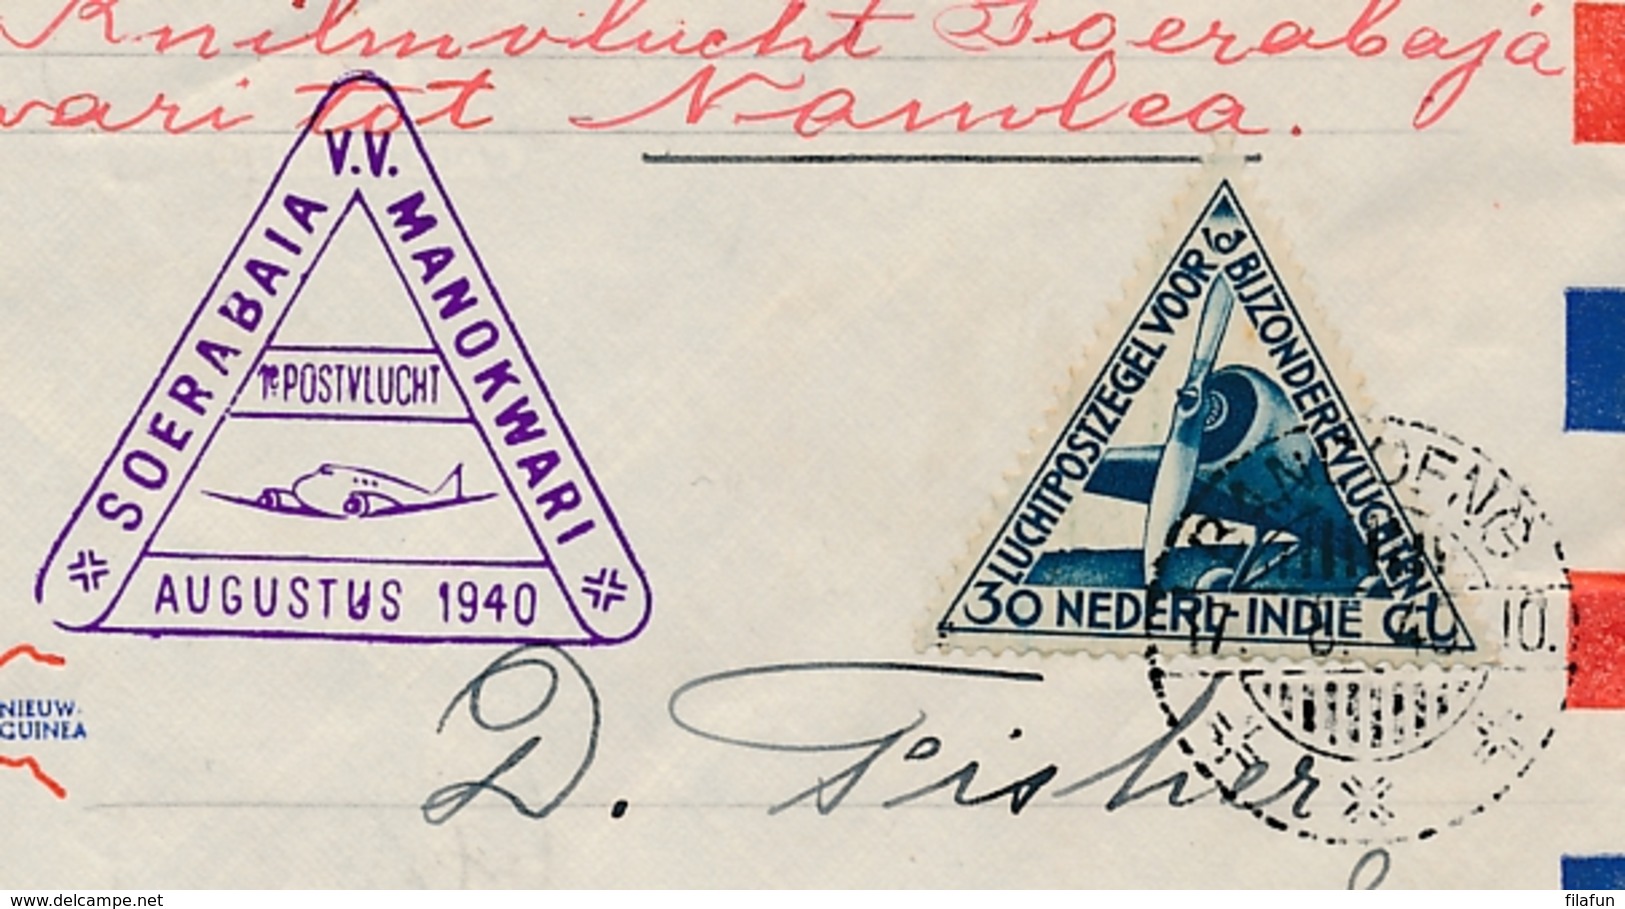 Nederlands Indië - 1940 - Groote Oost Envelop Met 1e KNILM Vlucht Soerabaja - Manokwari -- Trajectpost Naar Namlea - Nederlands-Indië